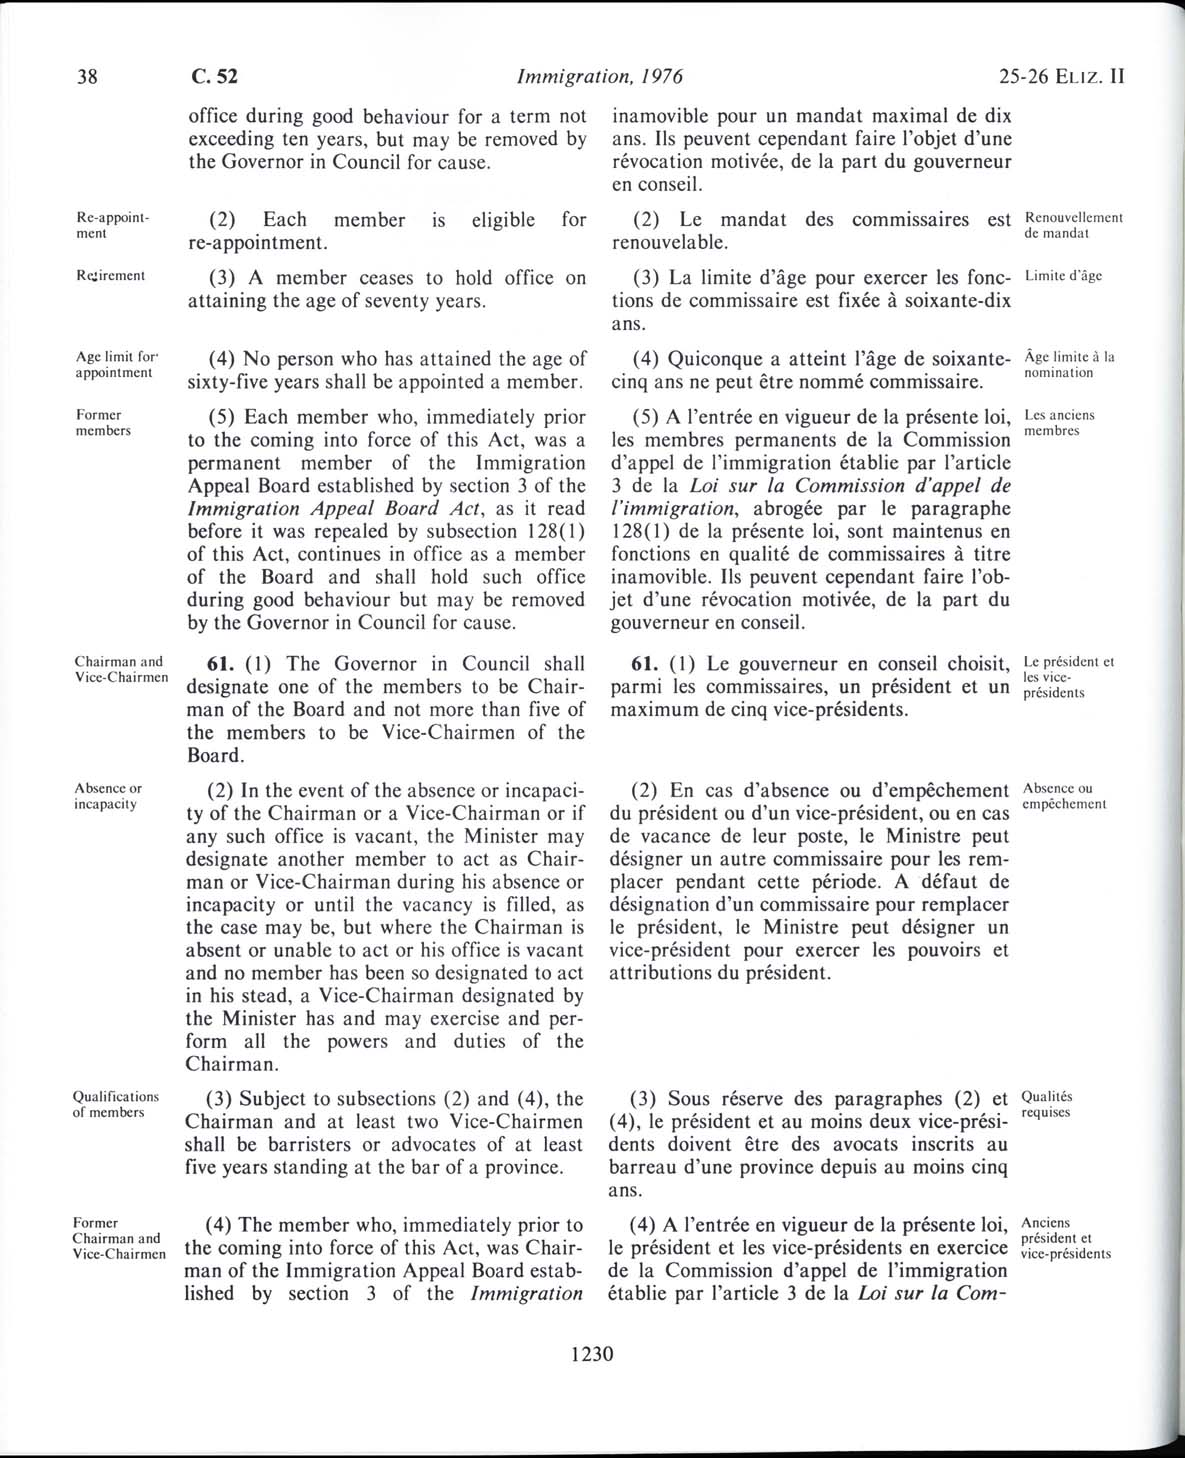 Page 1230 Loi sur l’immigration de 1976